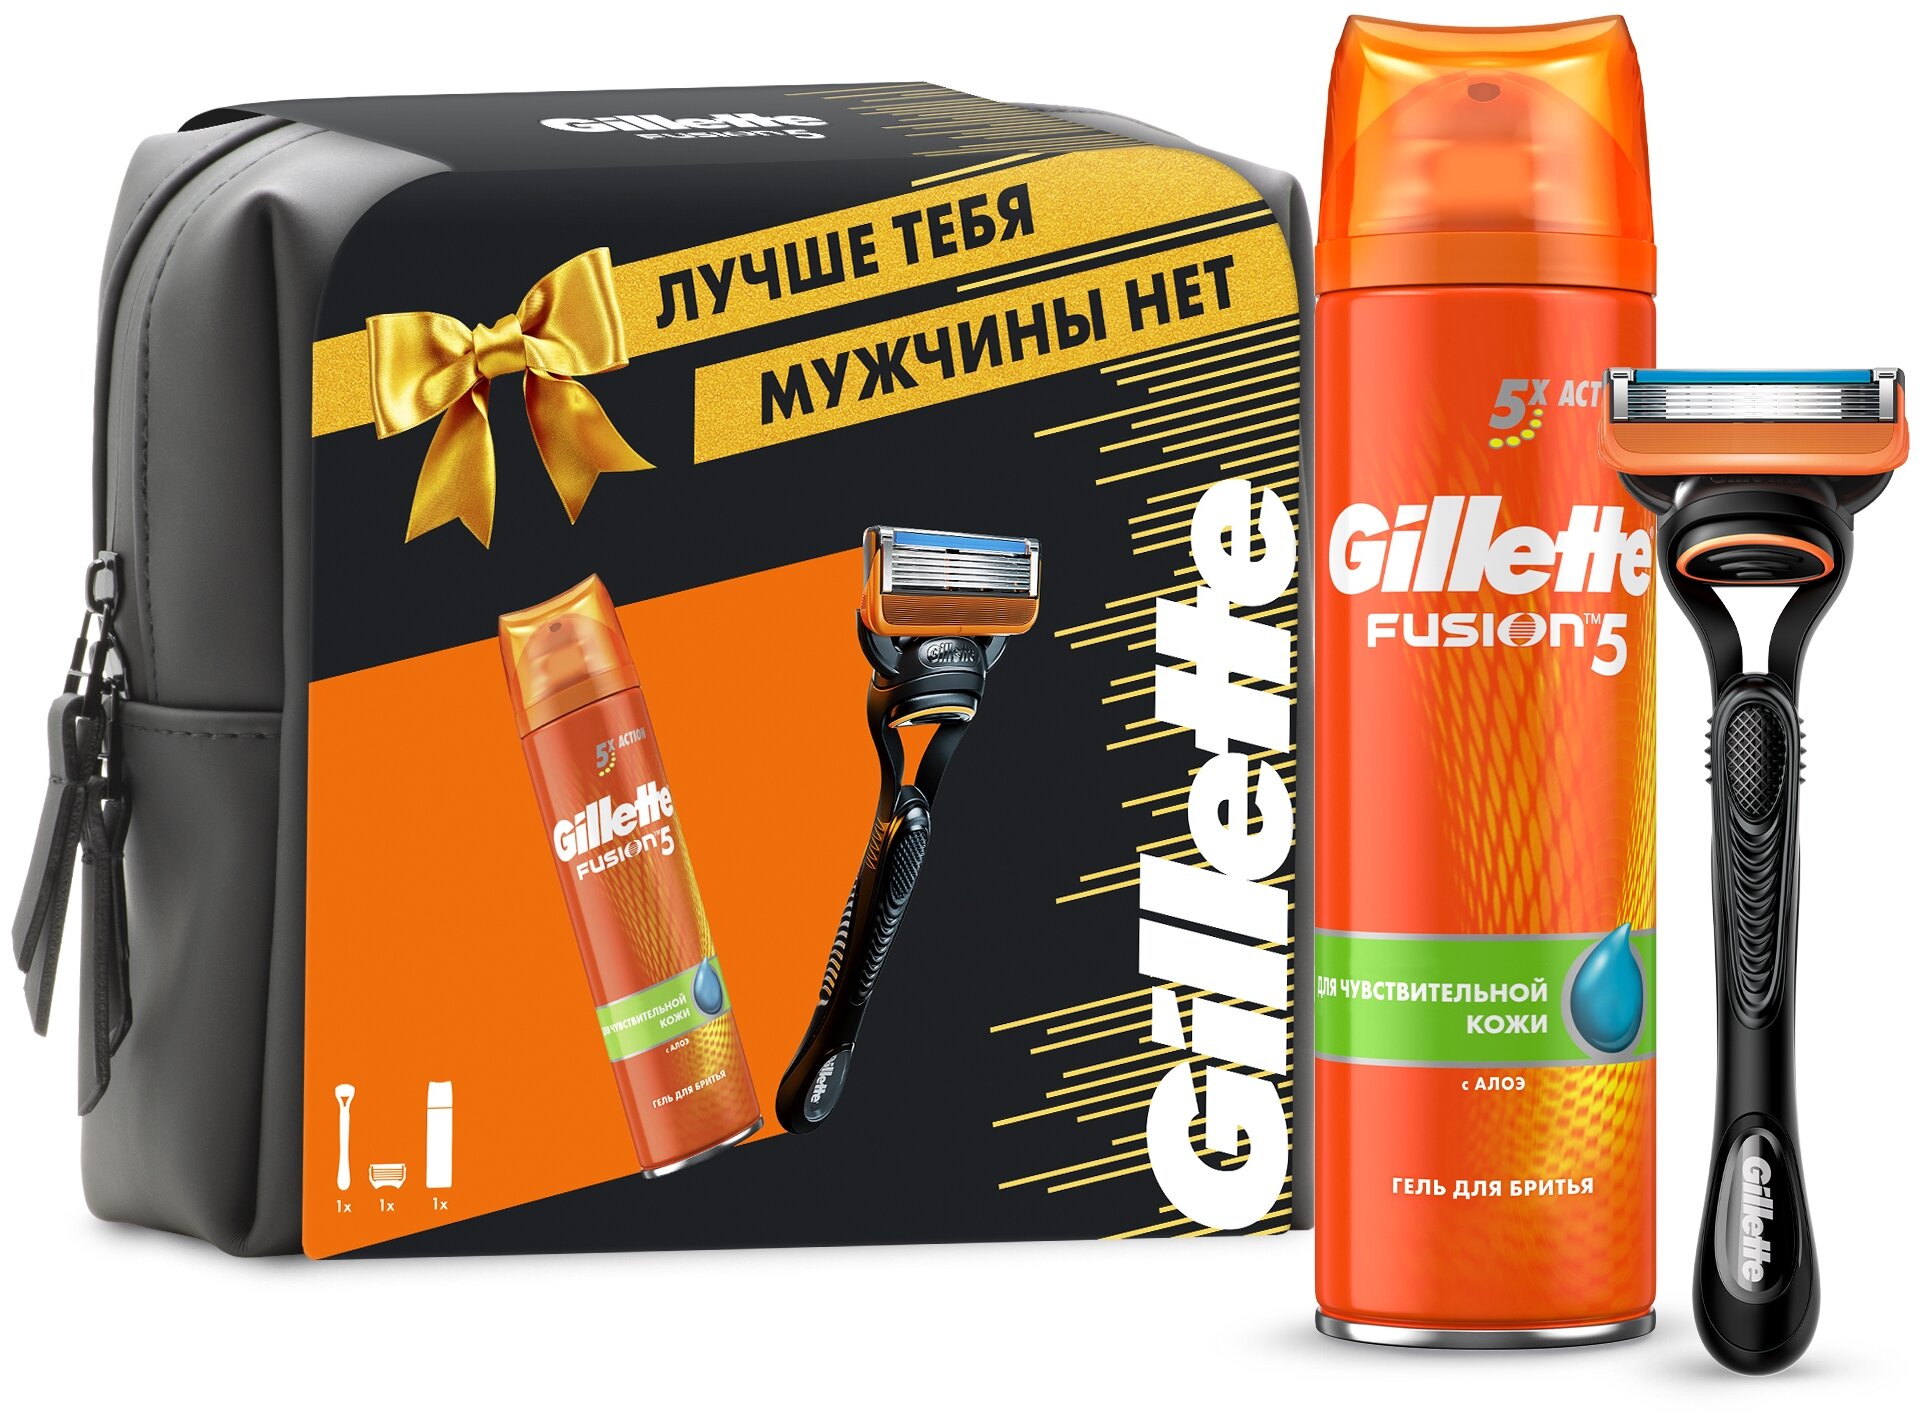 Подарочный набор Gillette Fusion Бритва с 1 сменной кассетой с 5 лезвиями и Гель для бритья 200мл Утконос - фото №1